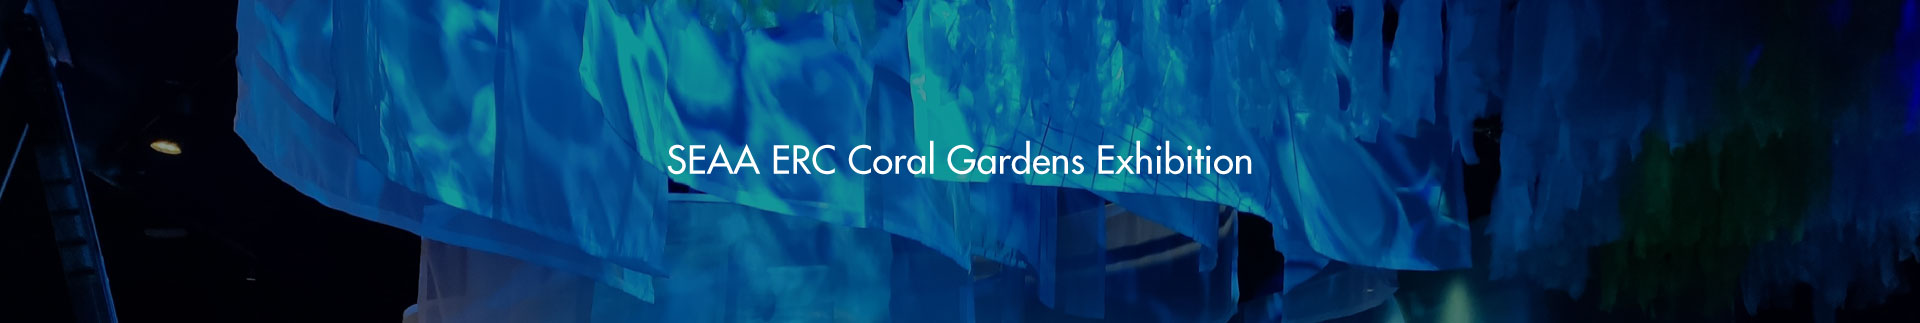 SEAA ERC Coral Gardens Exhibition